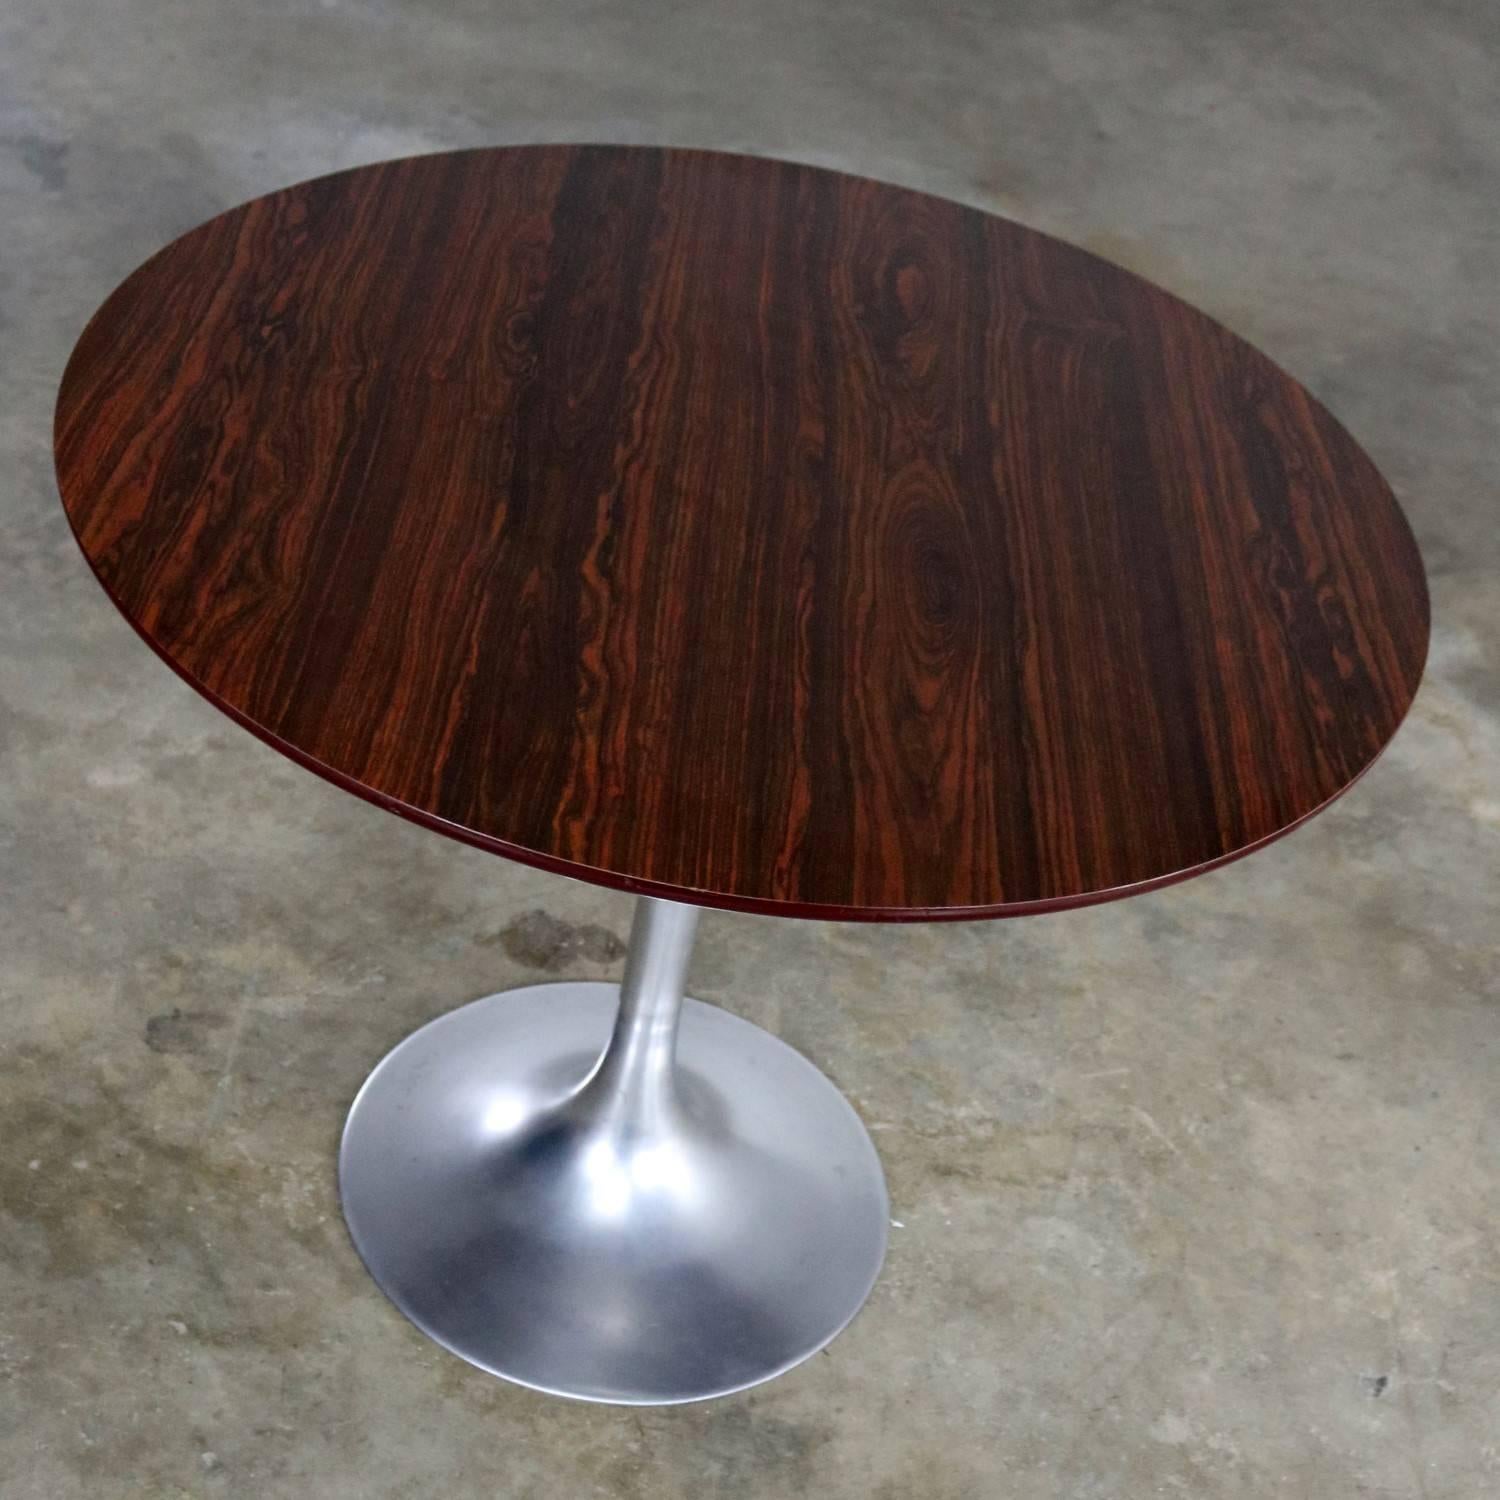 Mid-Century Modern Saarinen Style Tulip Base Table in Aluminum with Wood Grain Laminate Top